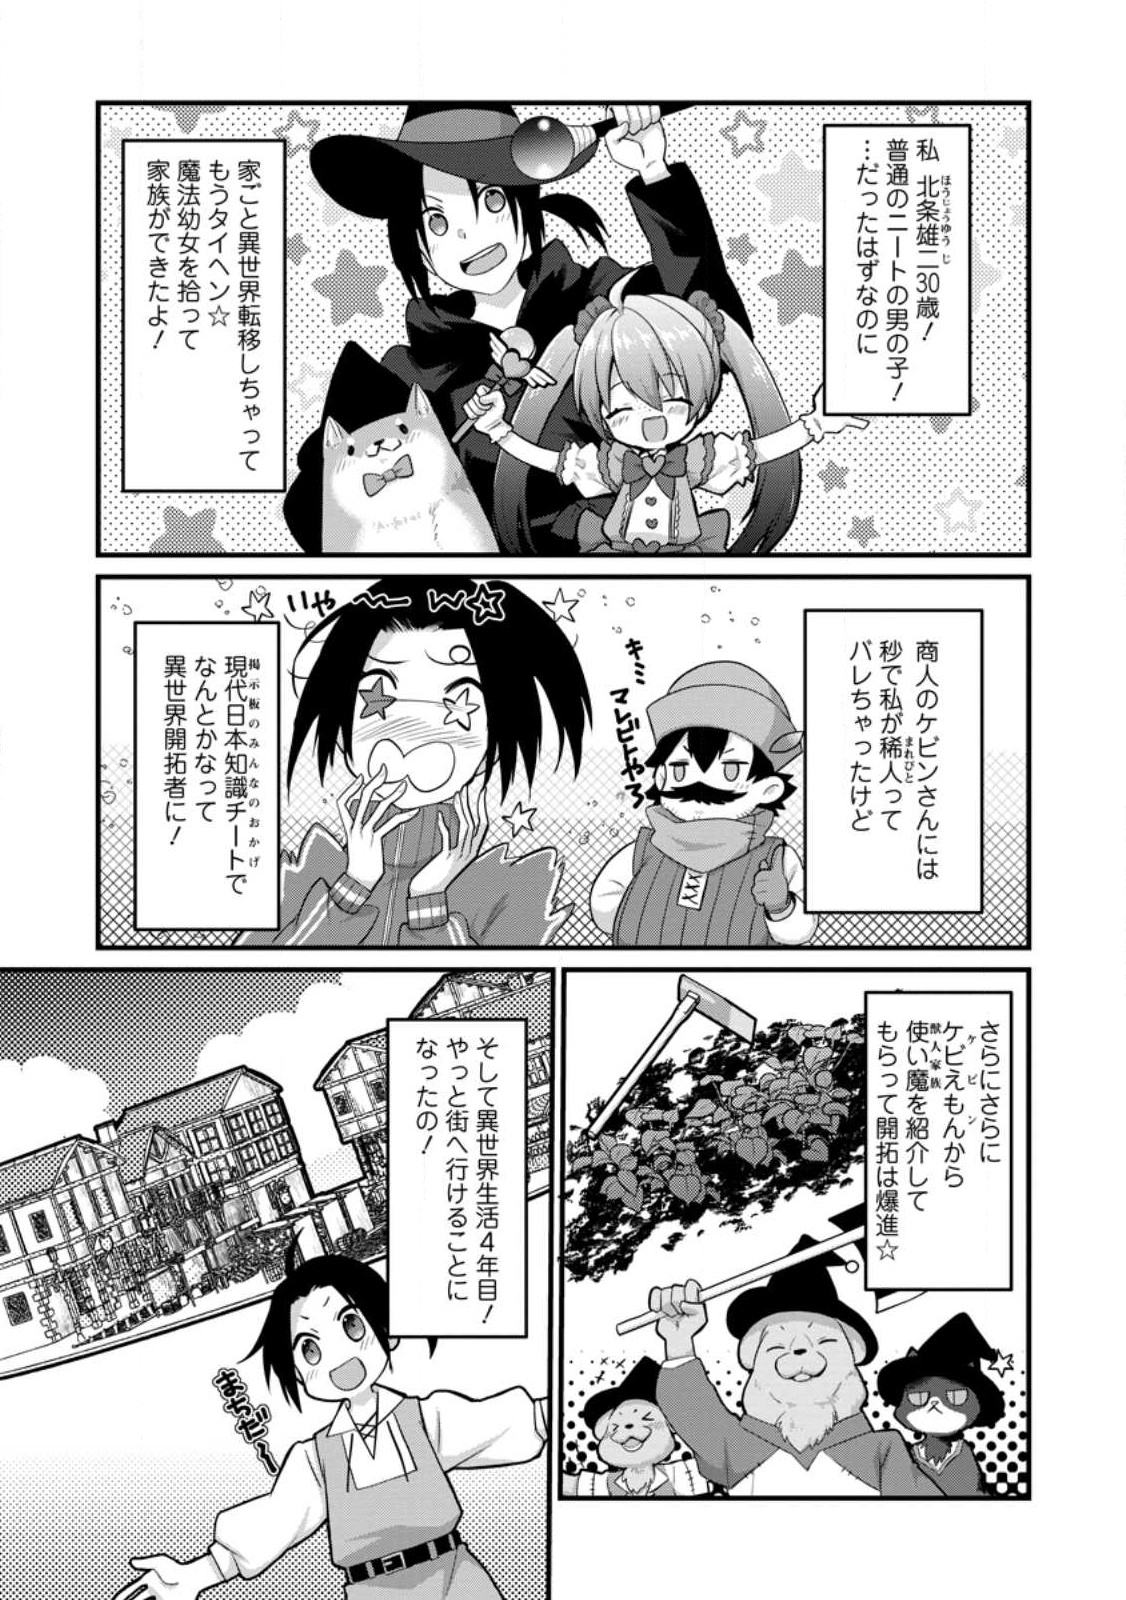 10-nen Goshi no HikiNEET wo Yamete Gaishutsu shitara Jitakugo to Isekai ni Tenishiteta - Chapter 11.1 - Page 1